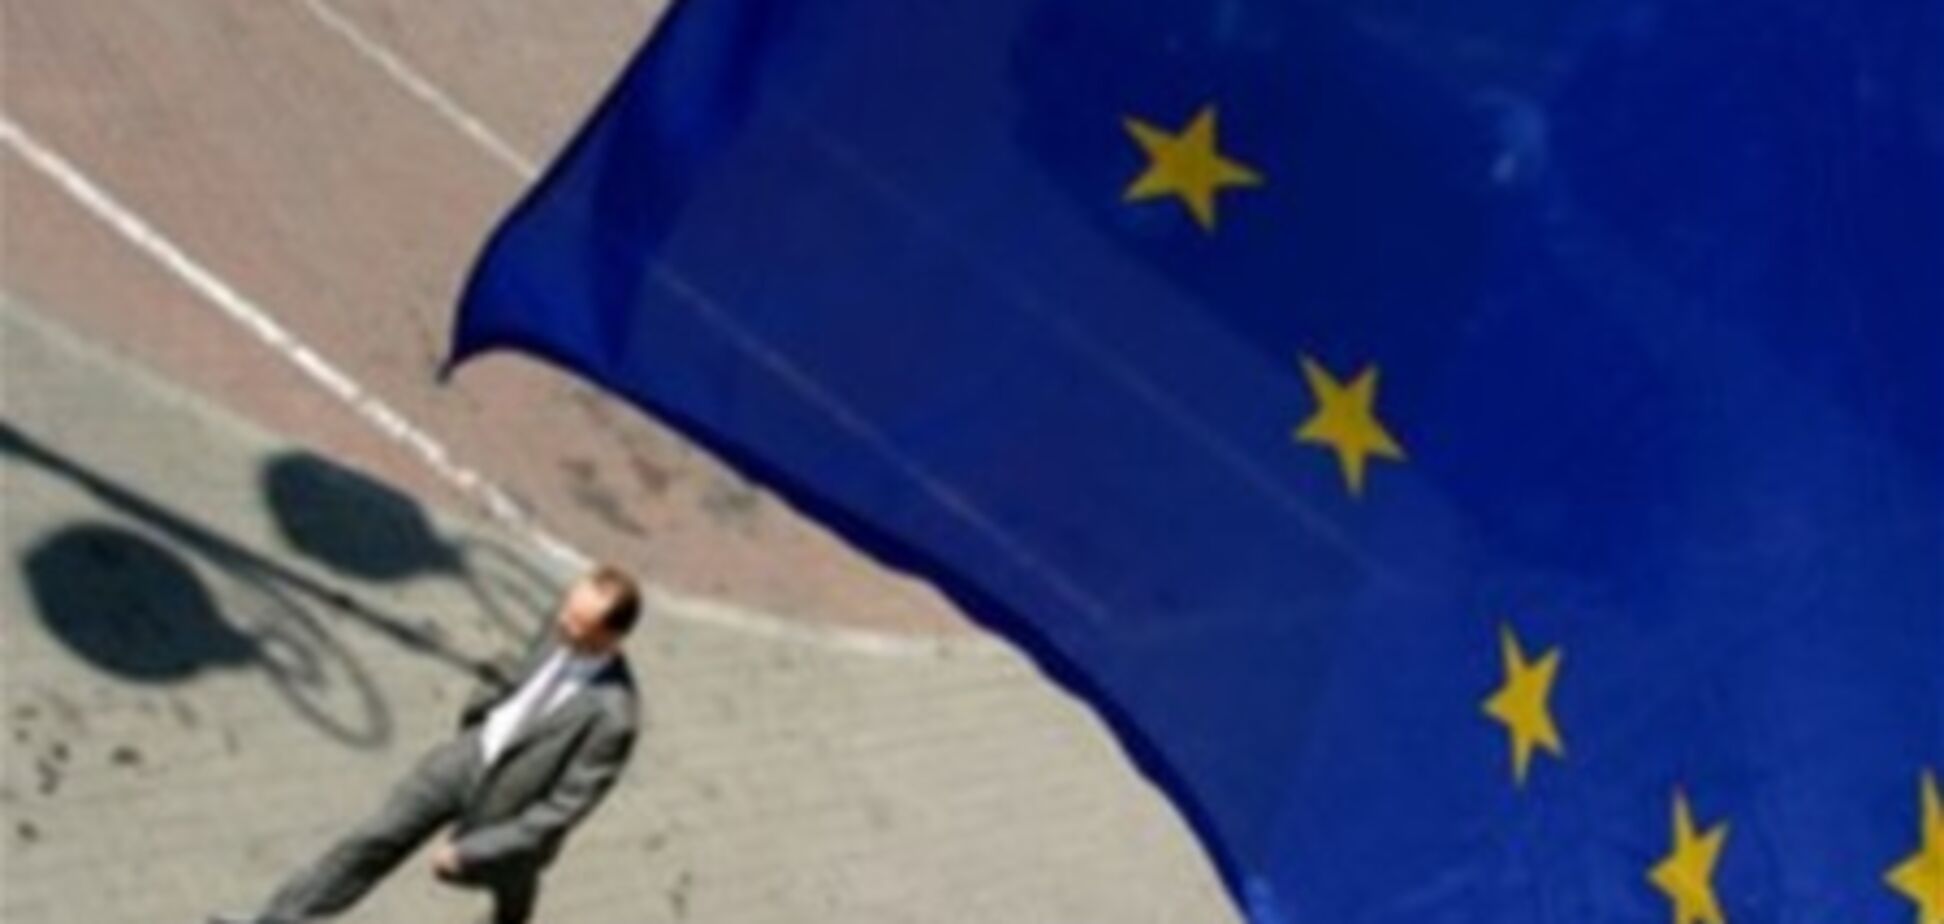 Румыния против допусловий для подписания Ассоциации Украины с ЕС - евродепутат